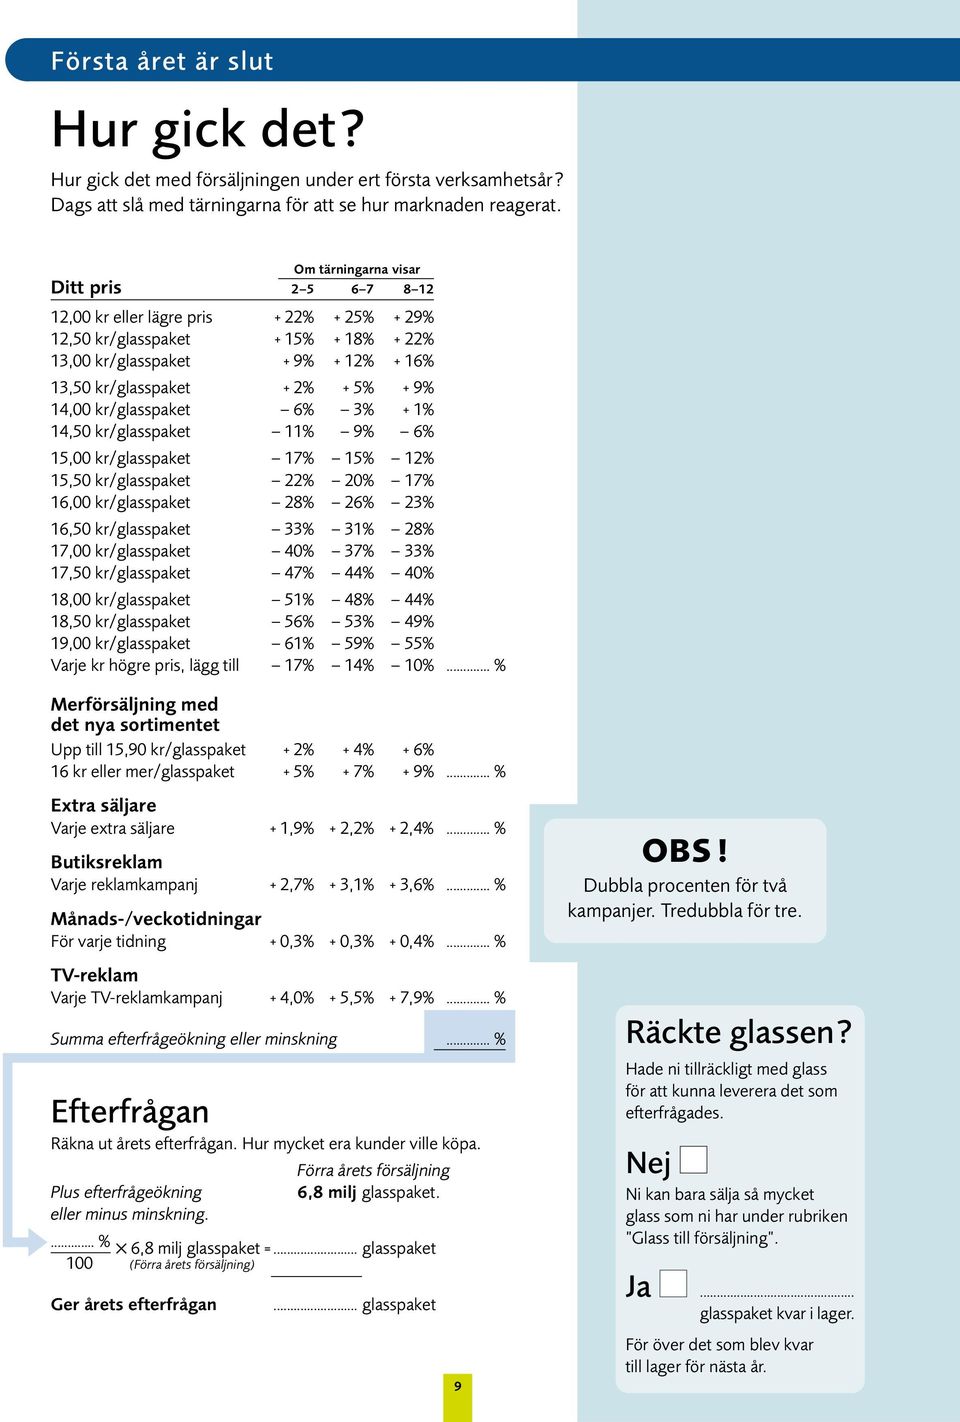 14,00 kr/glasspaket 6% 3% + 1% 14,50 kr/glasspaket 11% 9% 6% 15,00 kr/glasspaket 17% 15% 12% 15,50 kr/glasspaket 22% 20% 17% 16,00 kr/glasspaket 28% 26% 23% 16,50 kr/glasspaket 33% 31% 28% 17,00